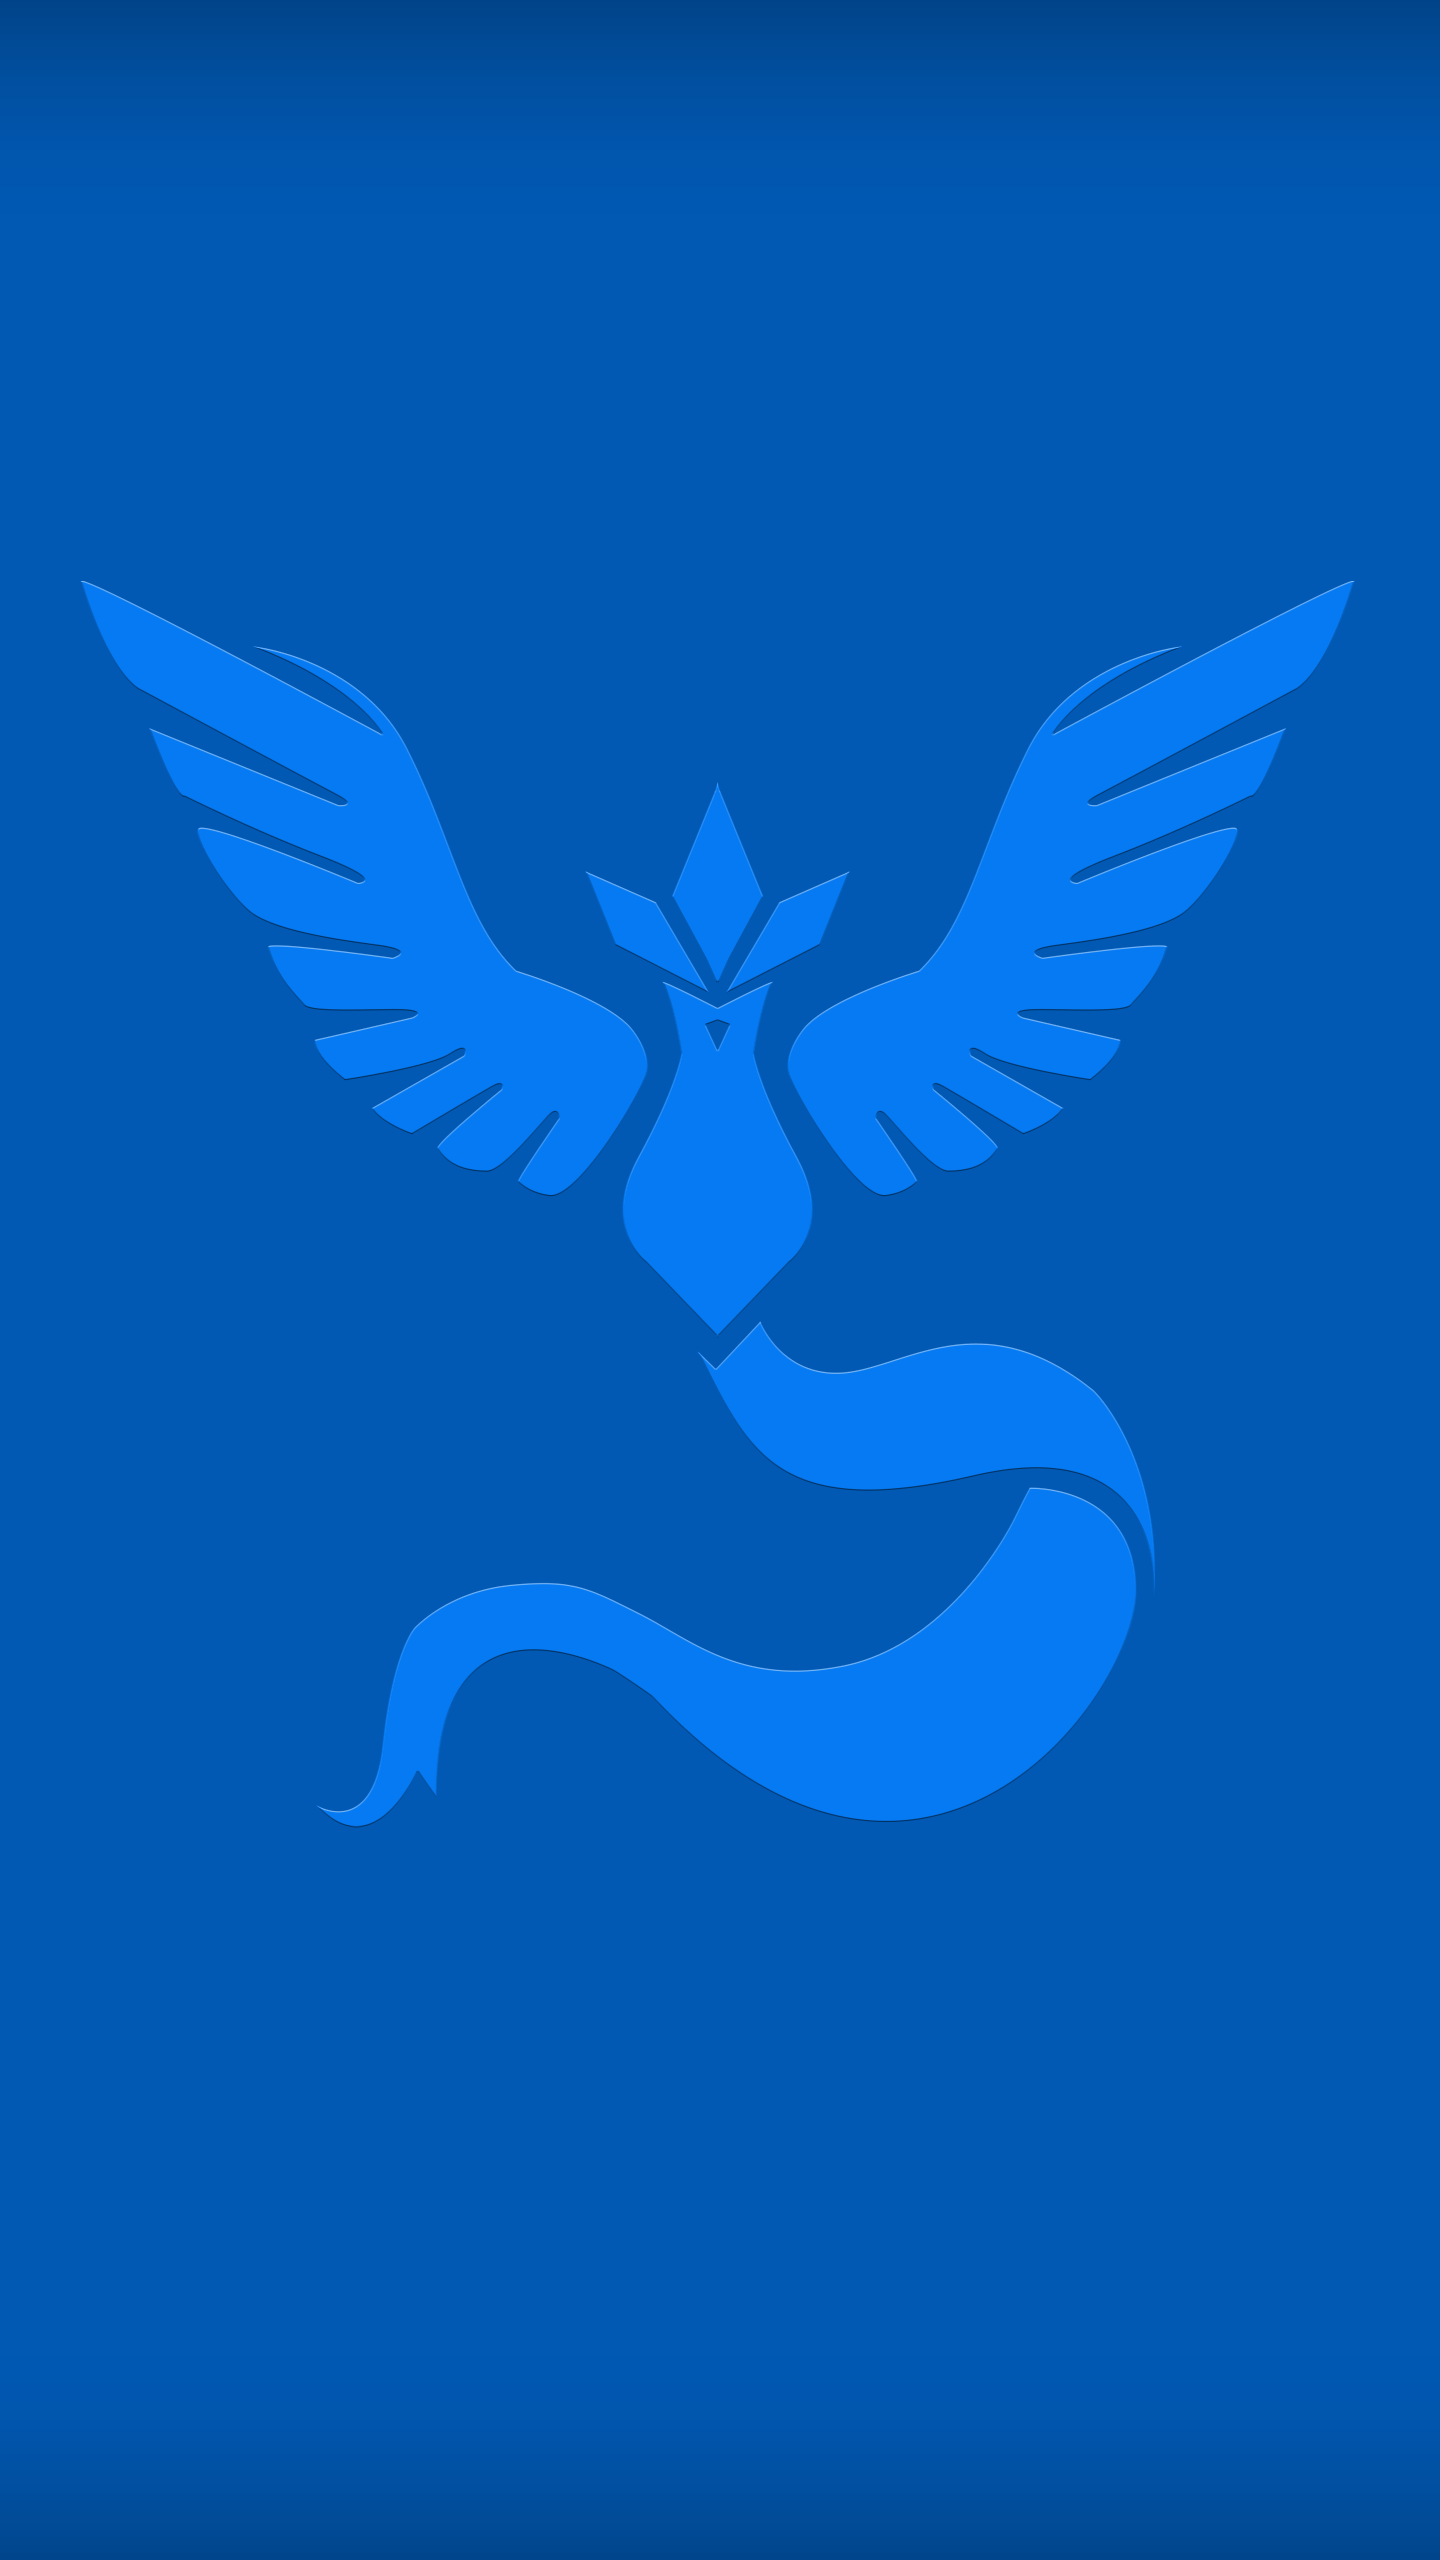 équipe mystique fond d'écran en direct,bleu,bleu cobalt,bleu électrique,aile,symbole